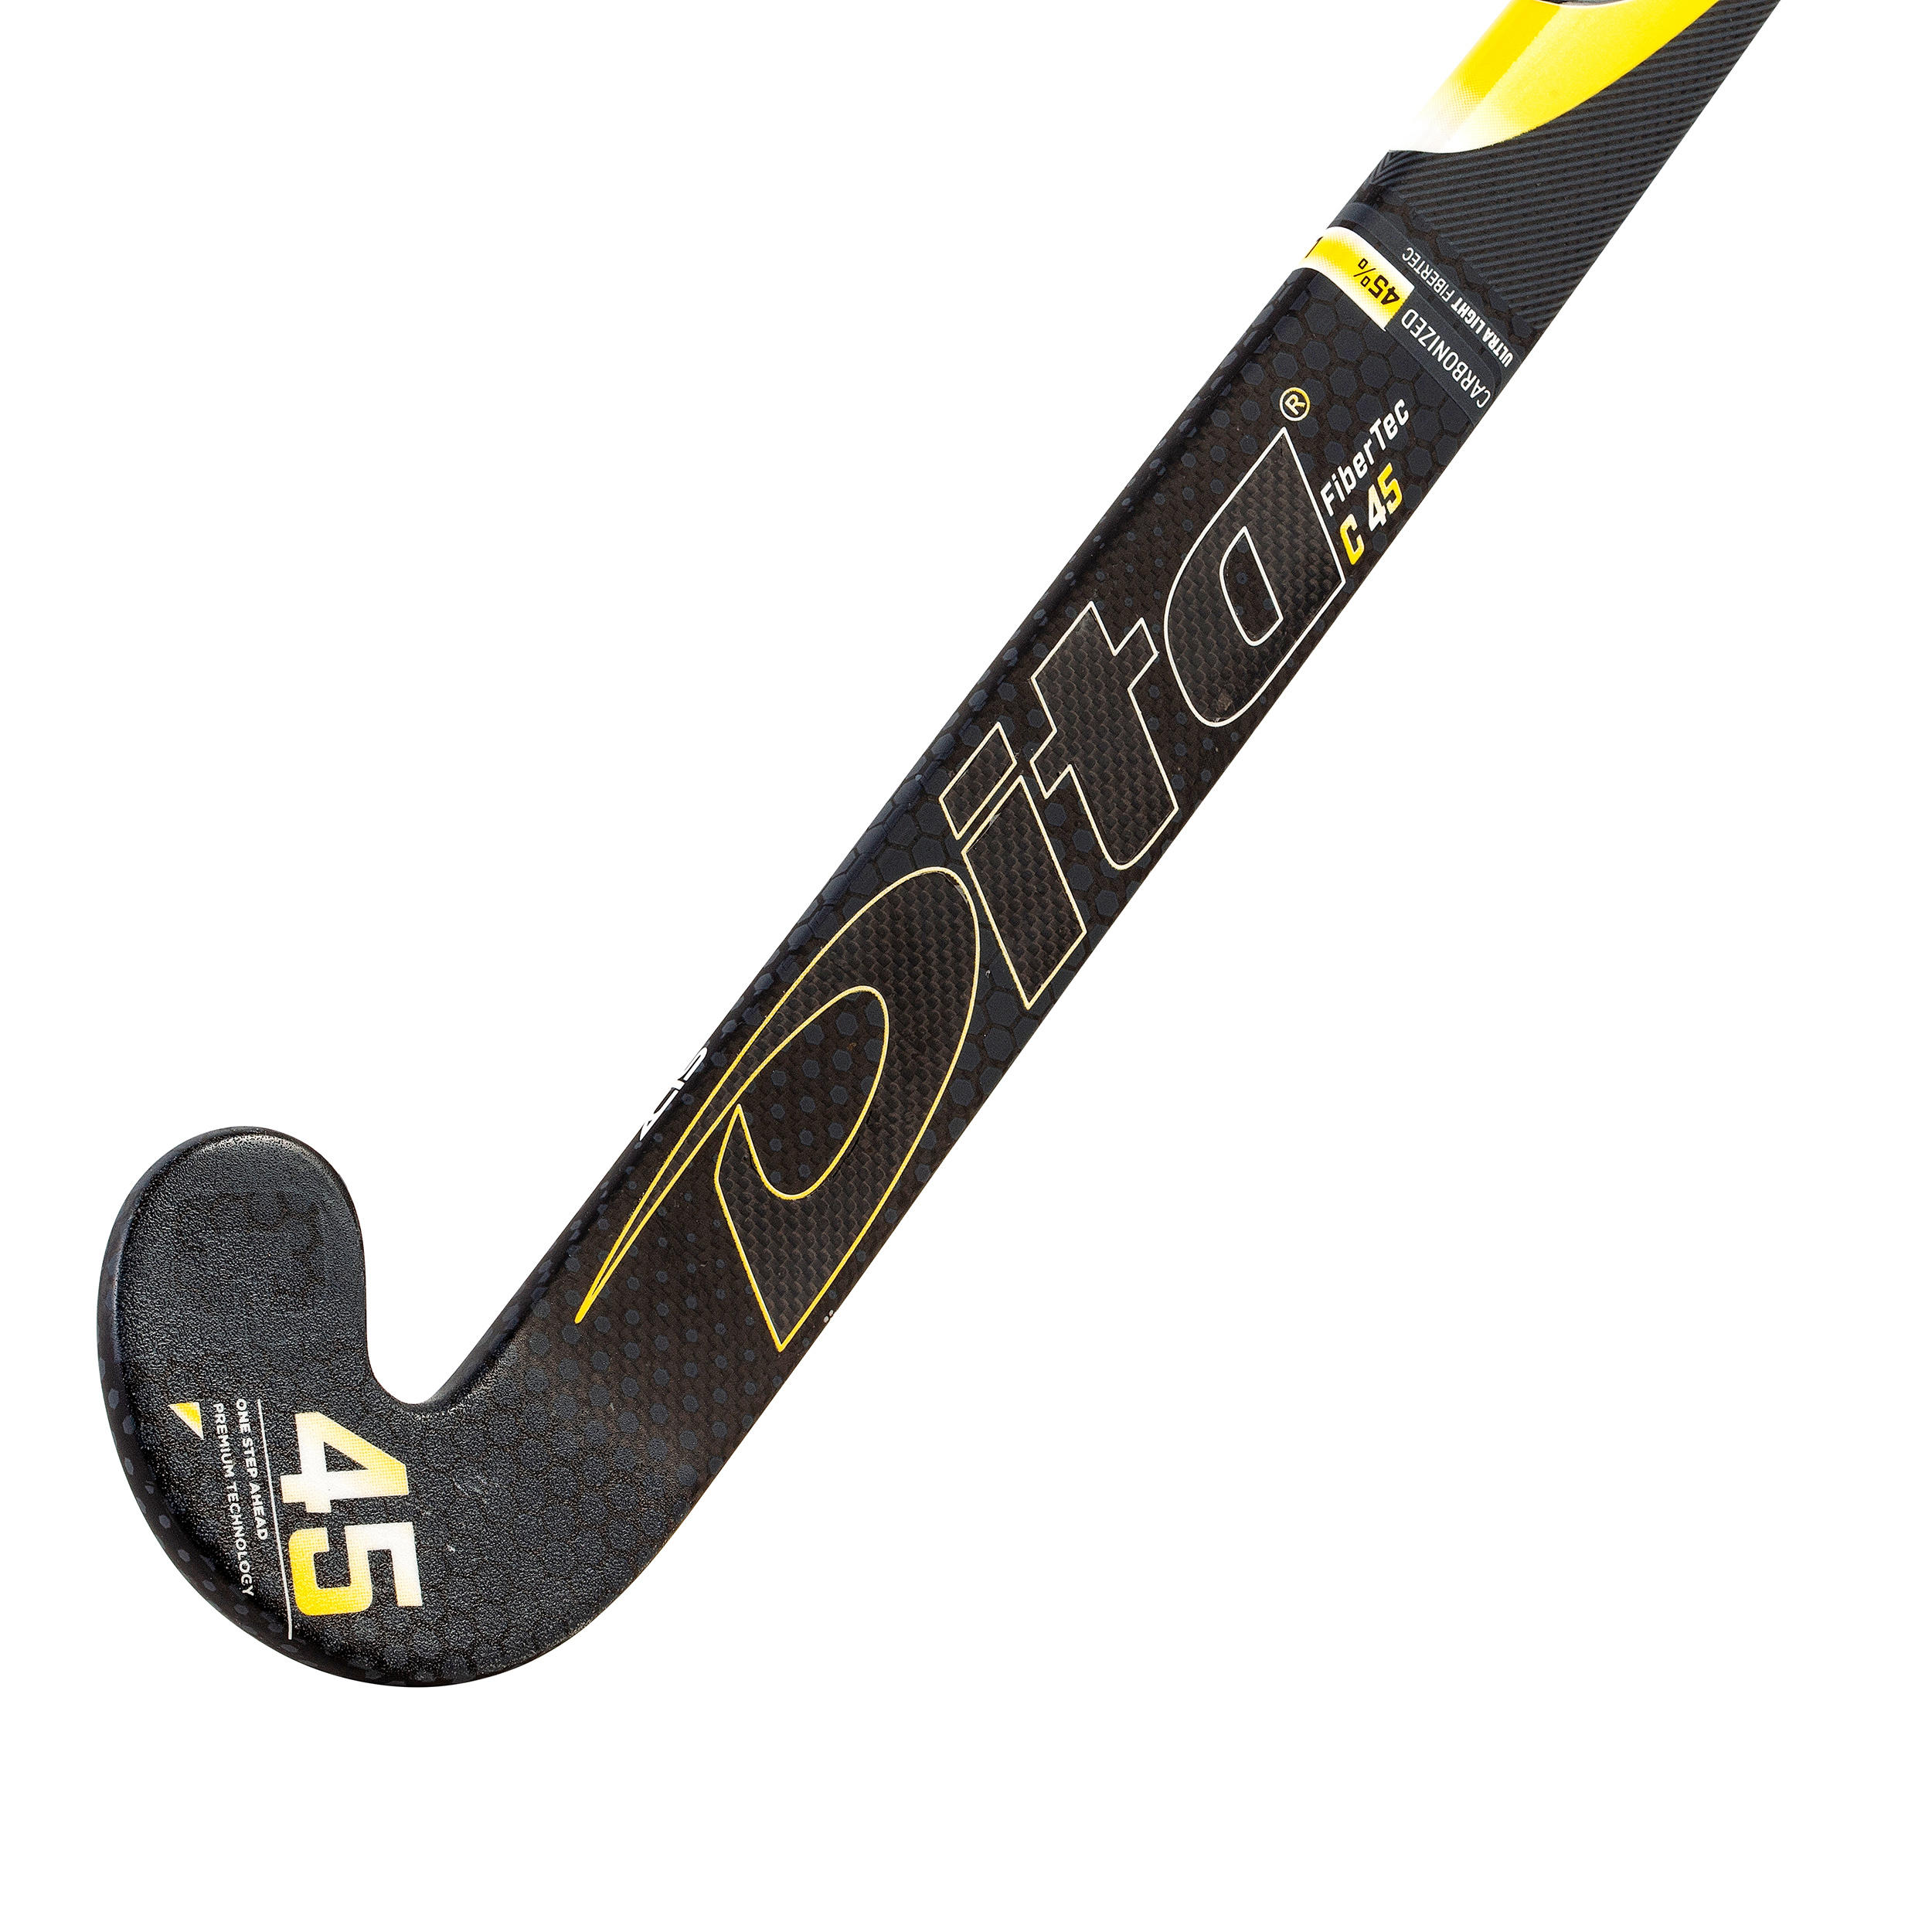 Adult Intermediate 45% Carbon Low Bow Field Hockey Stick FiberTec - Black/Gold 3/12